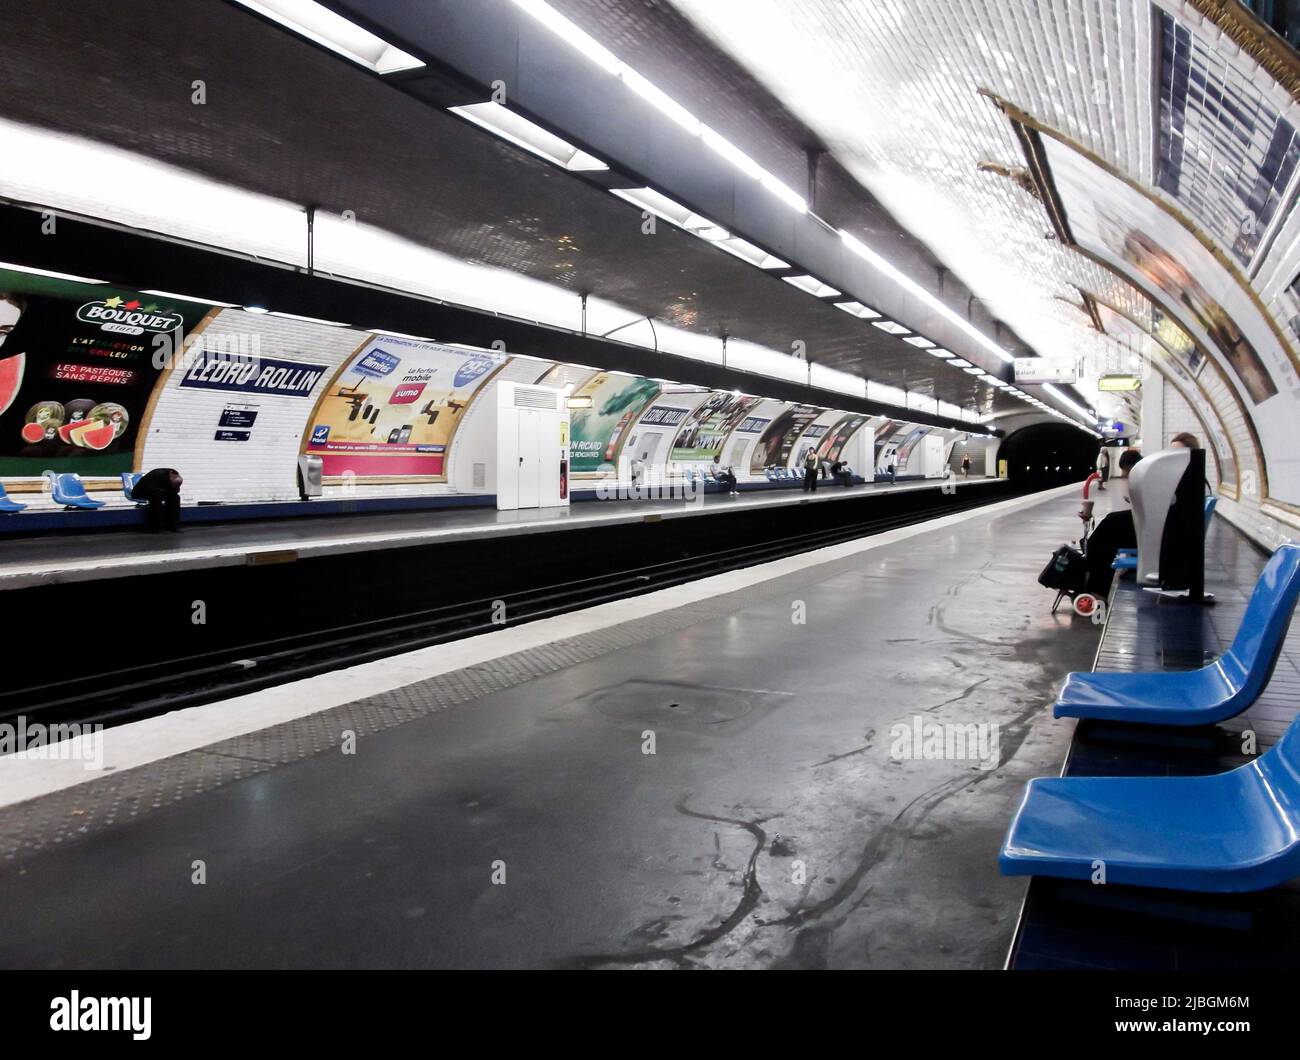 Paris, France - 27 juin 2011 : station de métro Ledru-Rollin. Ledru-Rollin est une station sur la ligne 8 du métro de Paris, qui porte le nom de l'avenue Ledru-Rollin Banque D'Images